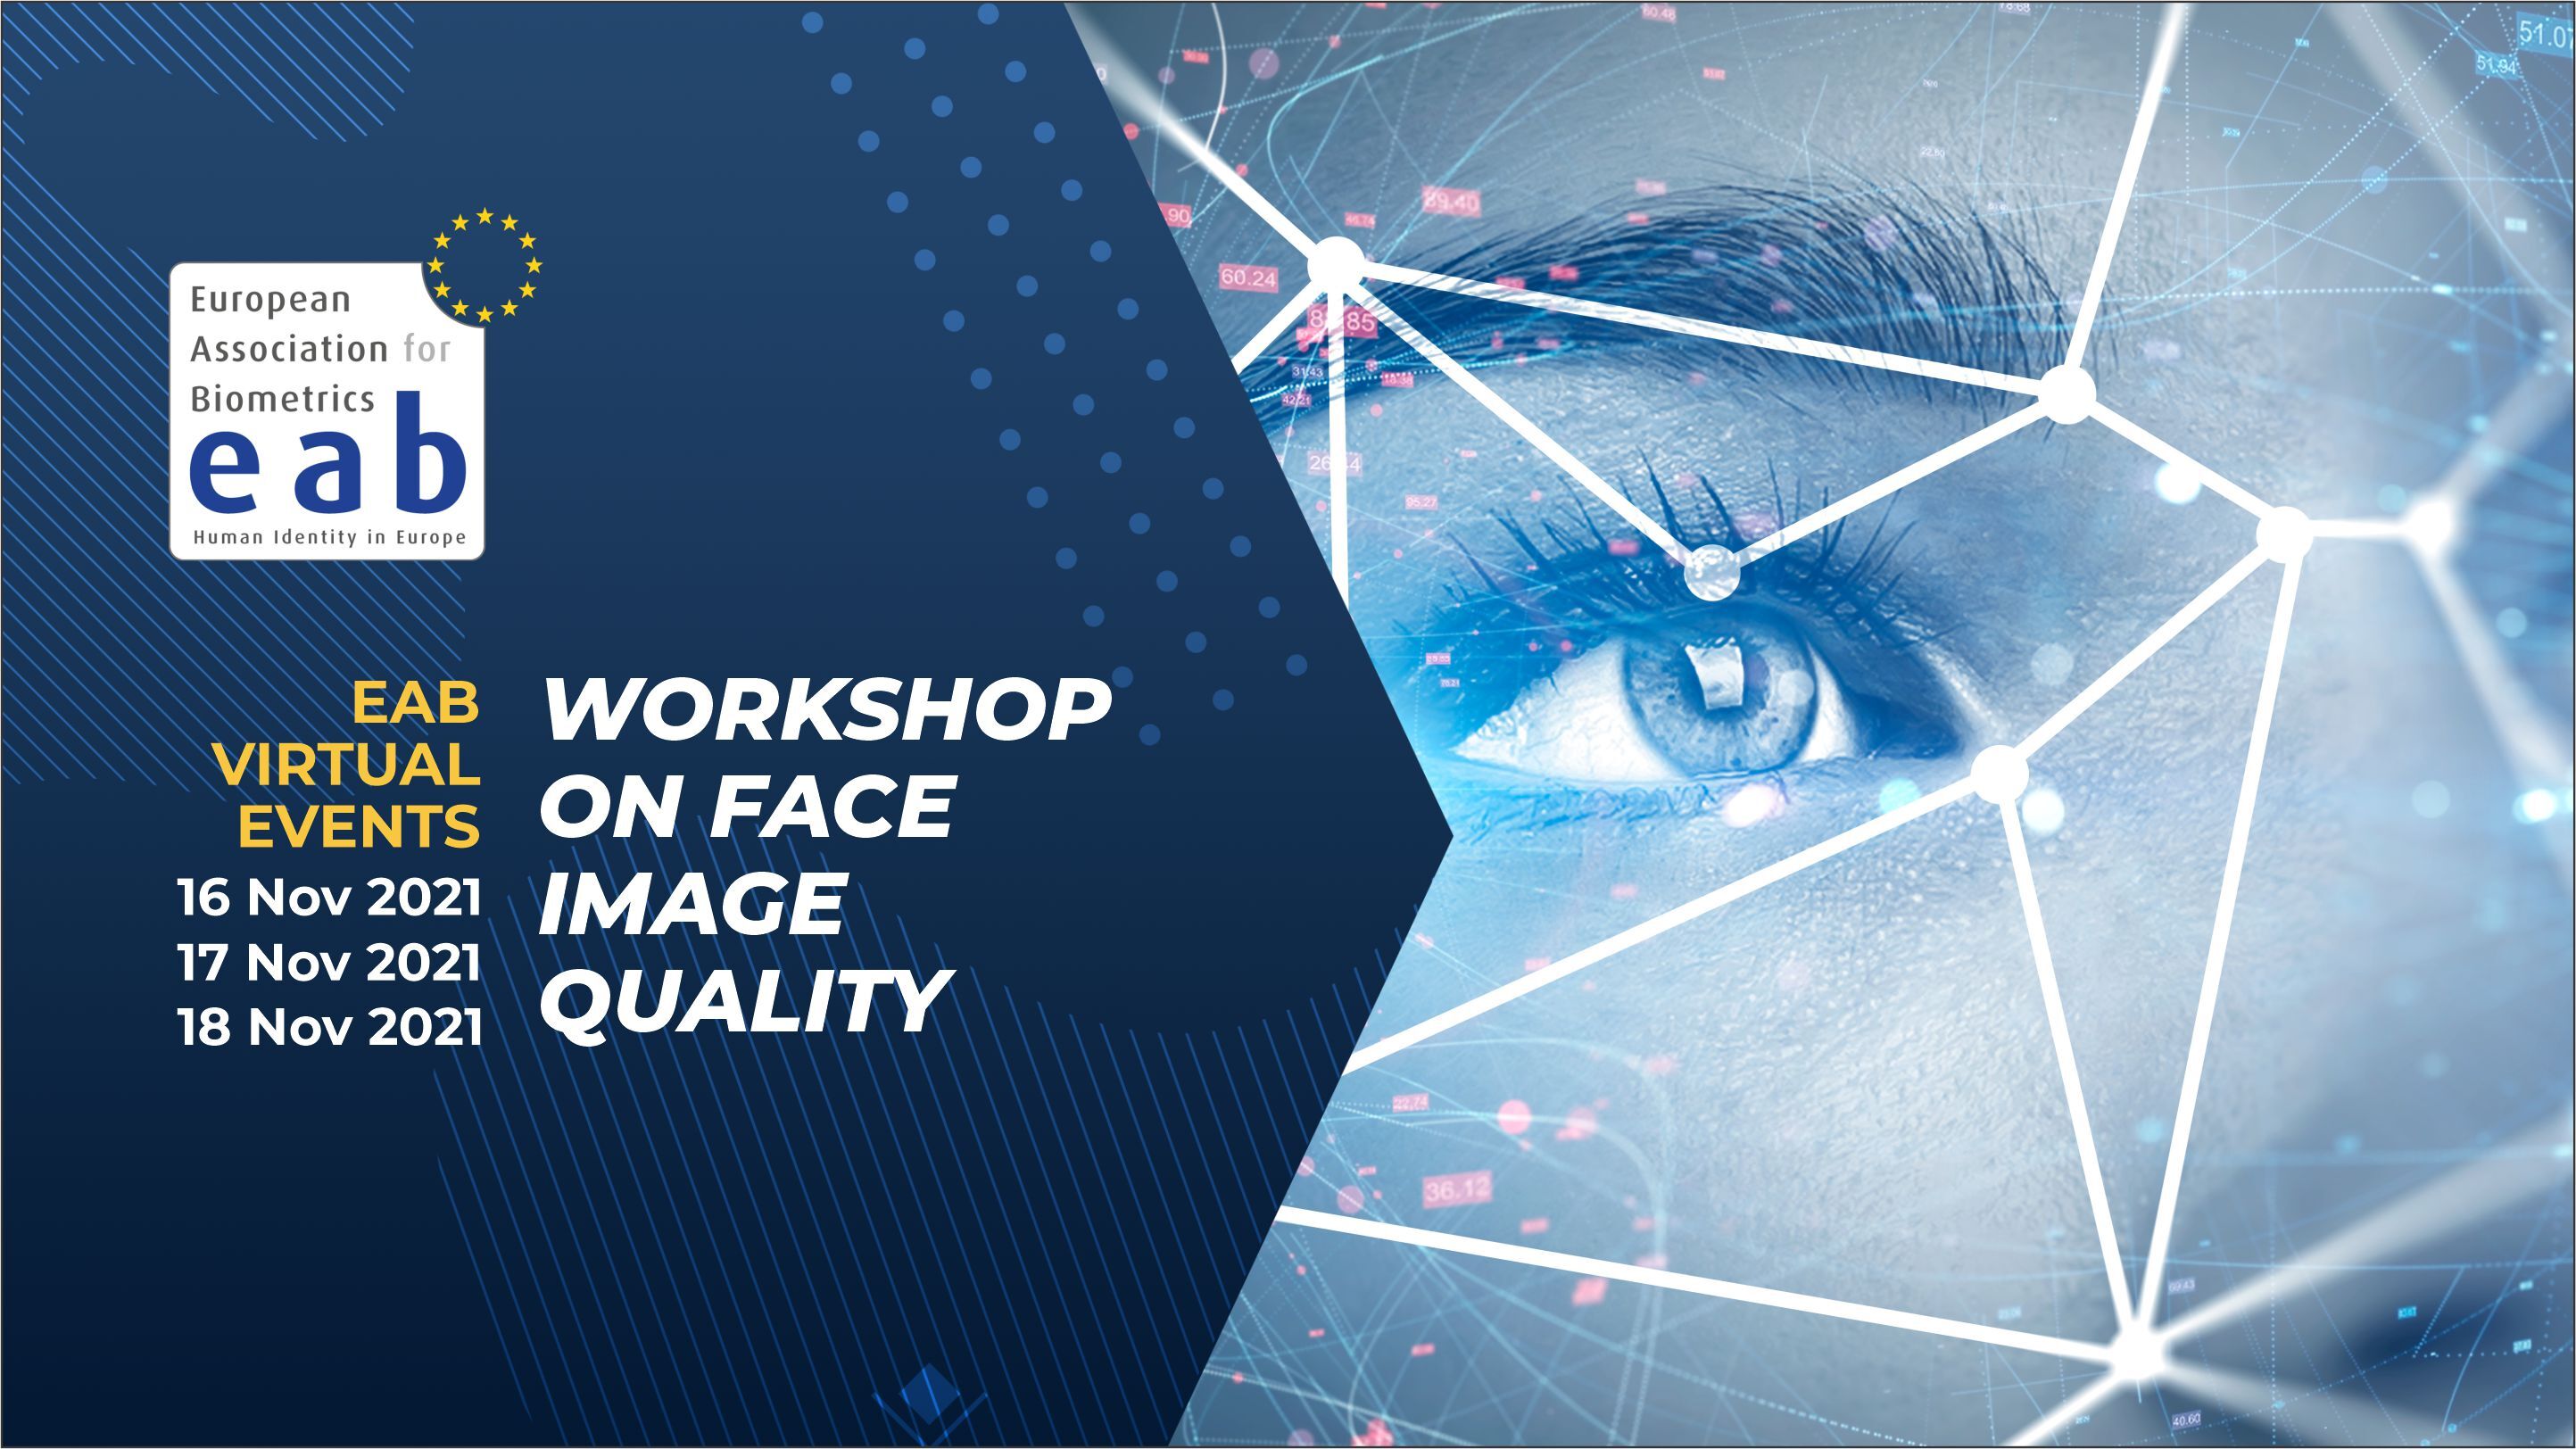 [Illustration] Banner on Workshop on Face Image Quality